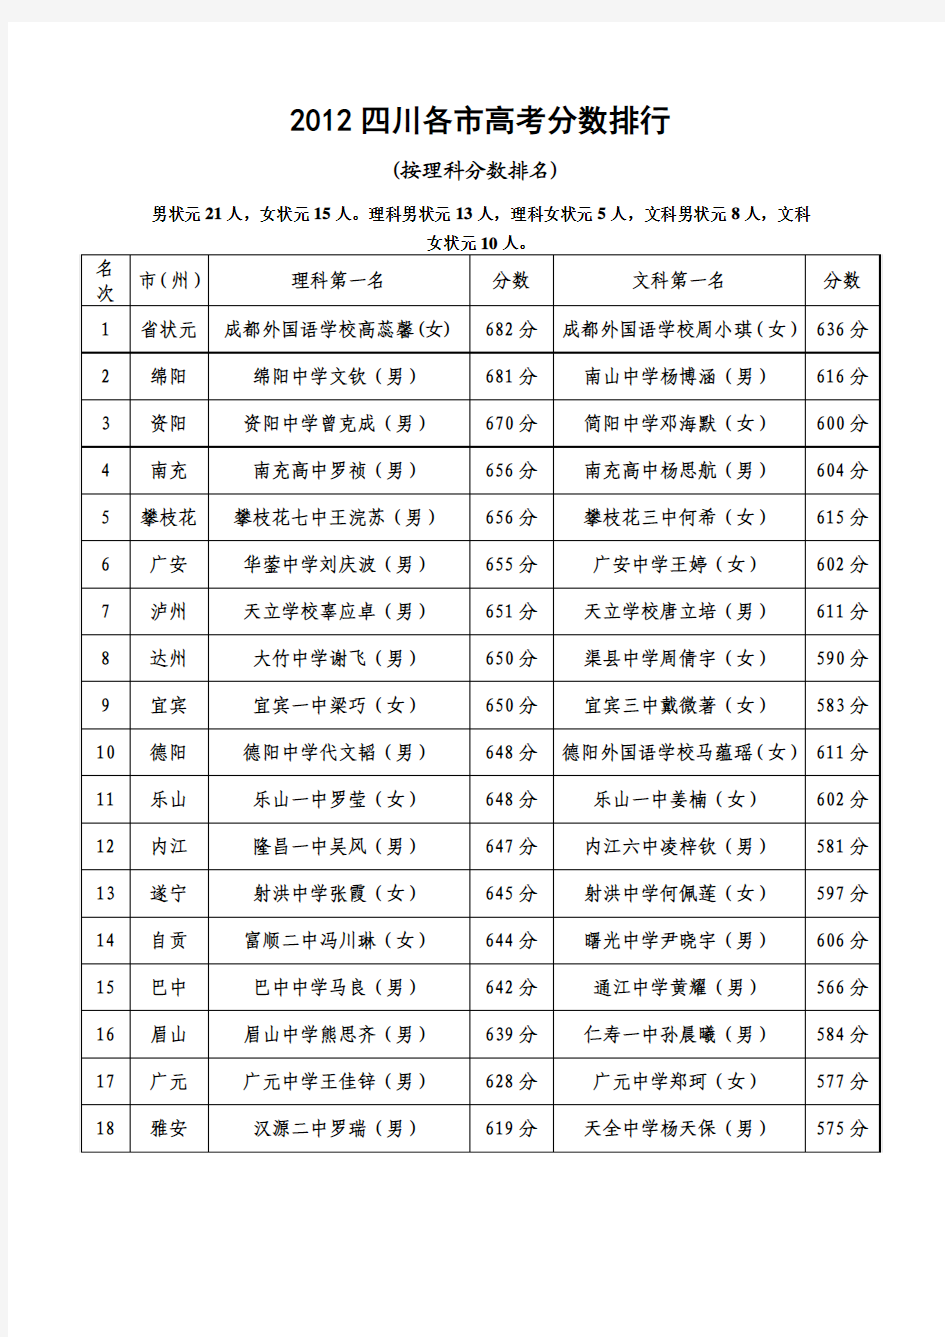 2012四川高考文科状元及各分数段成绩分析图